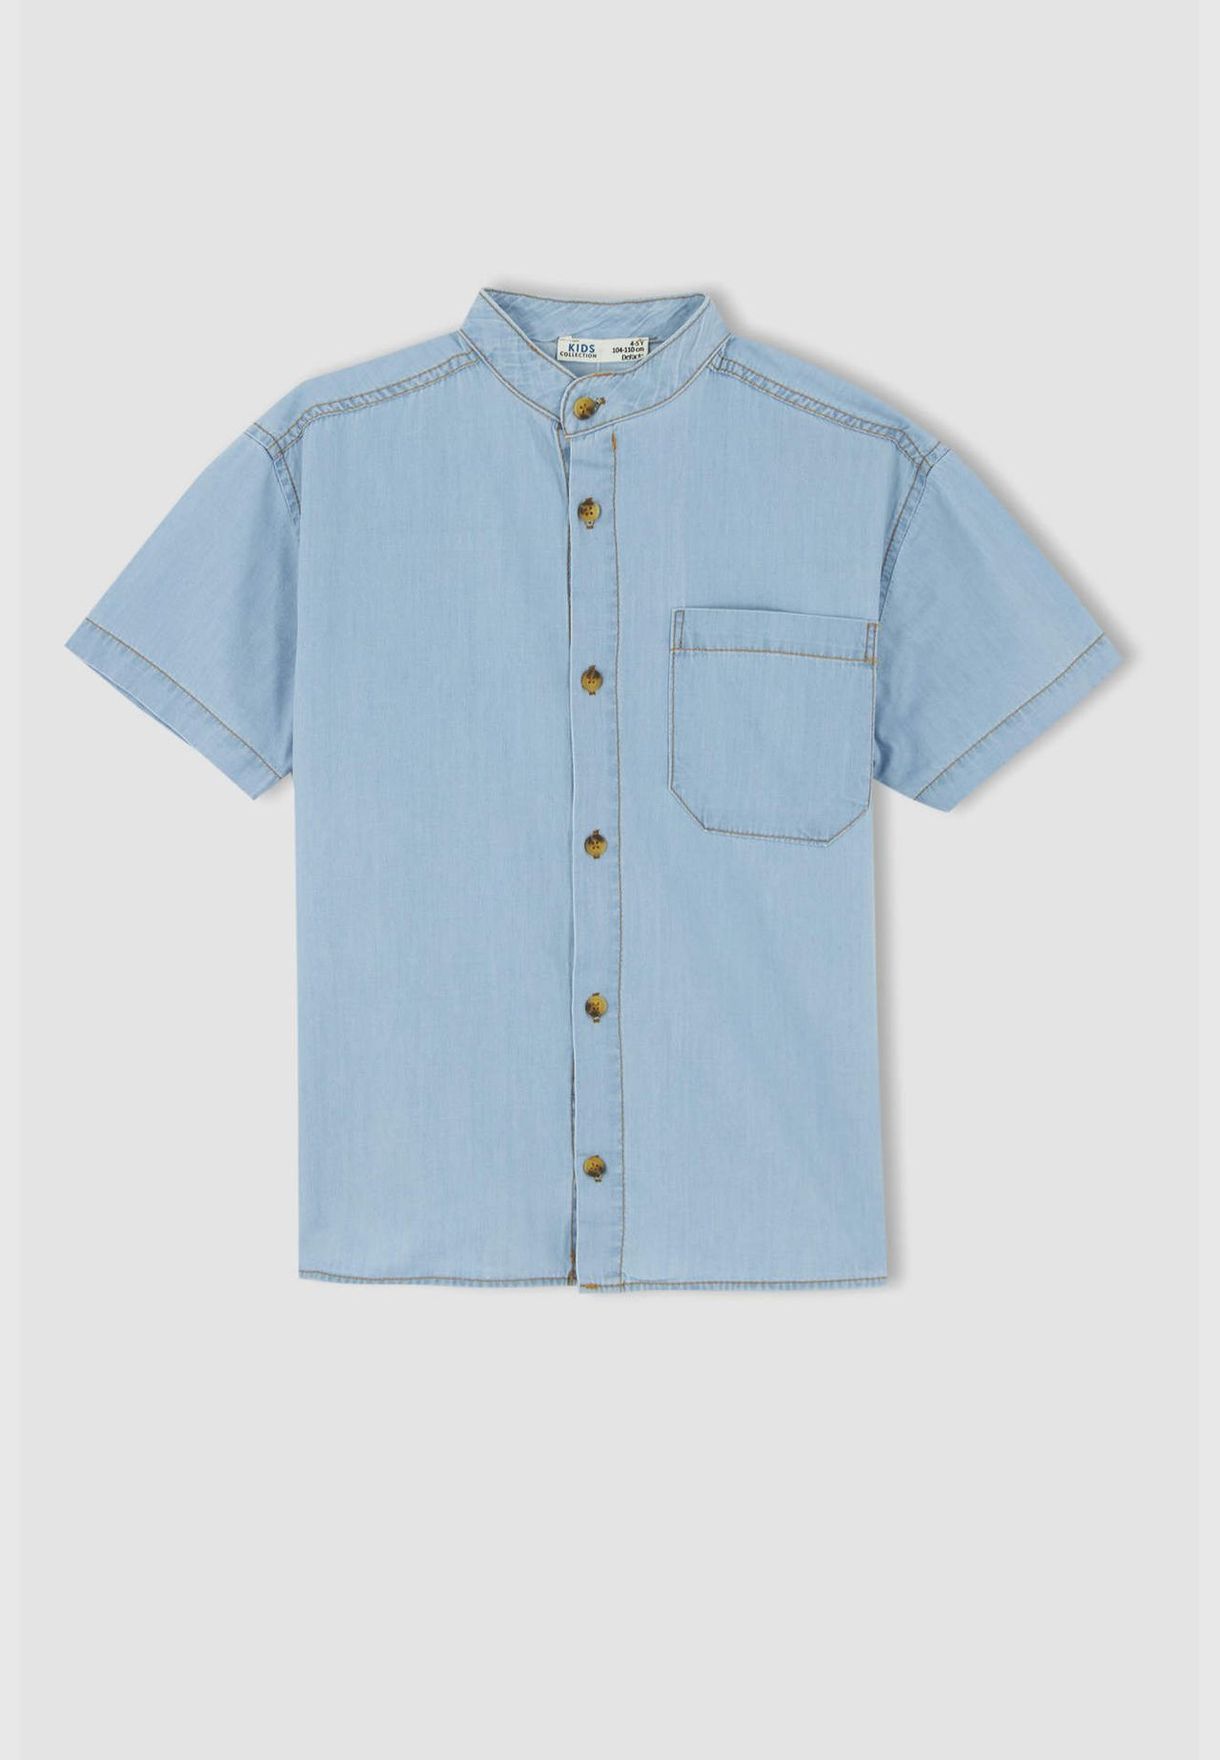 Regular Fit Short Sleeve One Side Pocket Jean Shirt